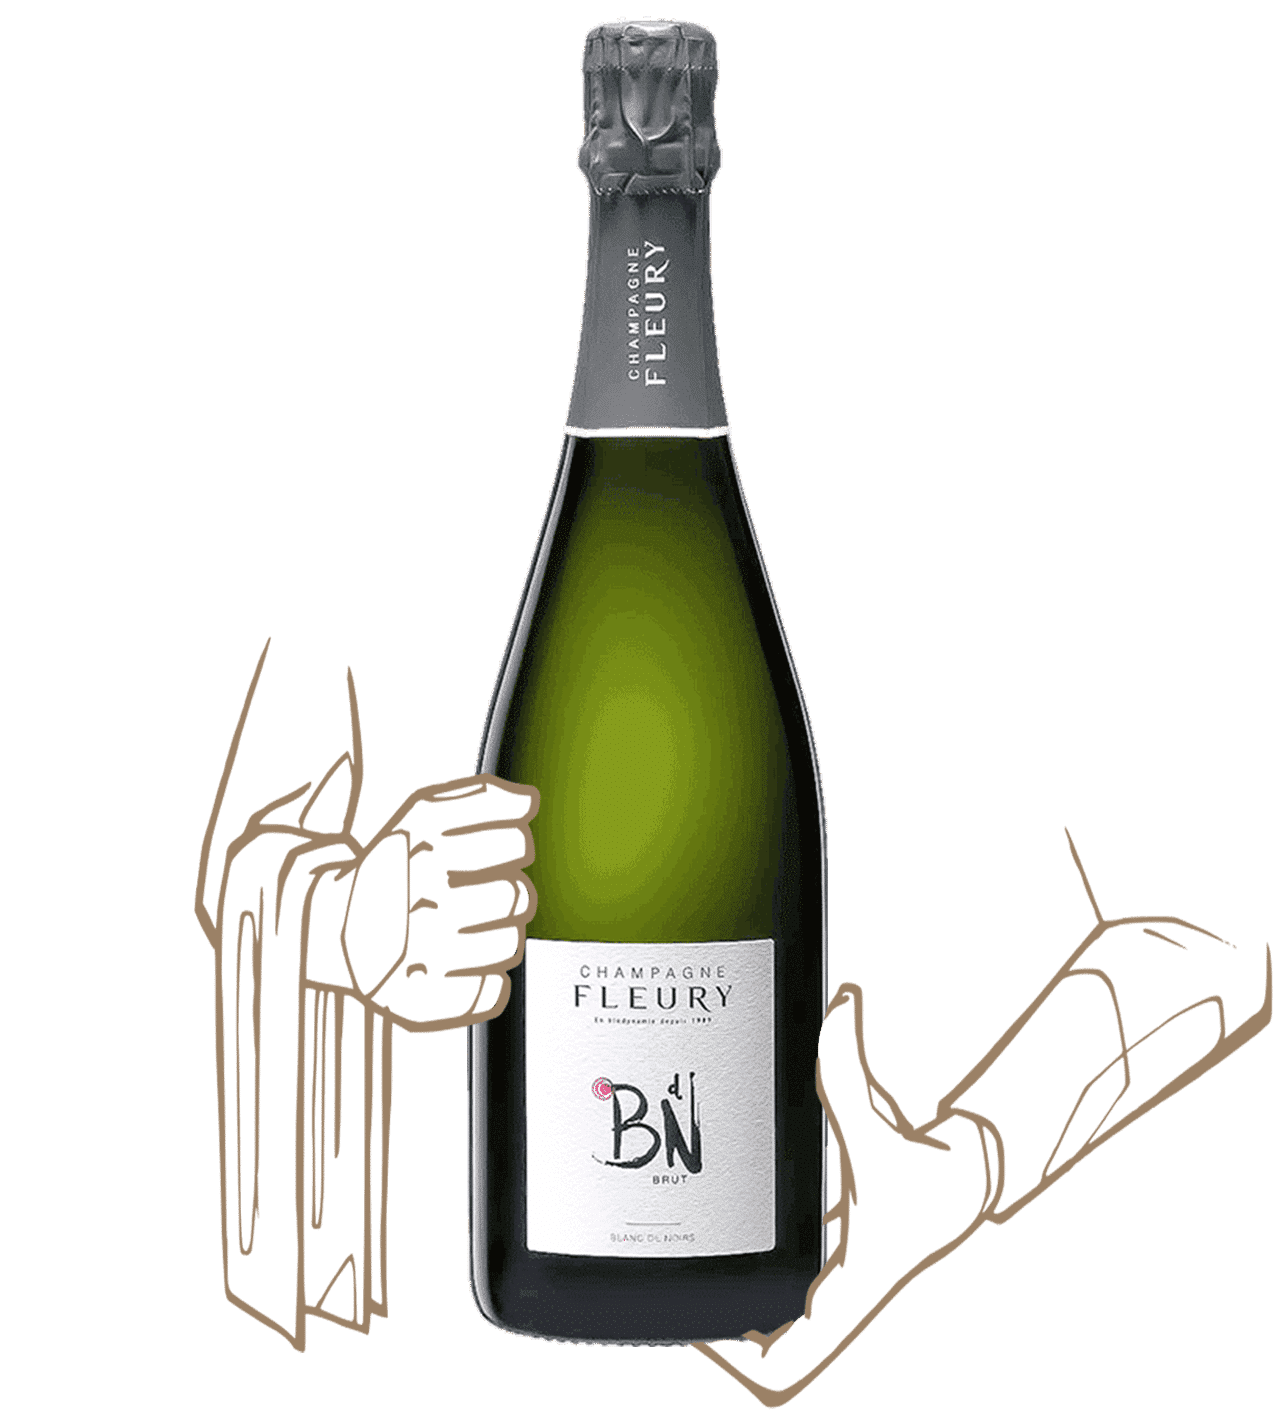 BDN is a biodynamic champagne by maison fleury